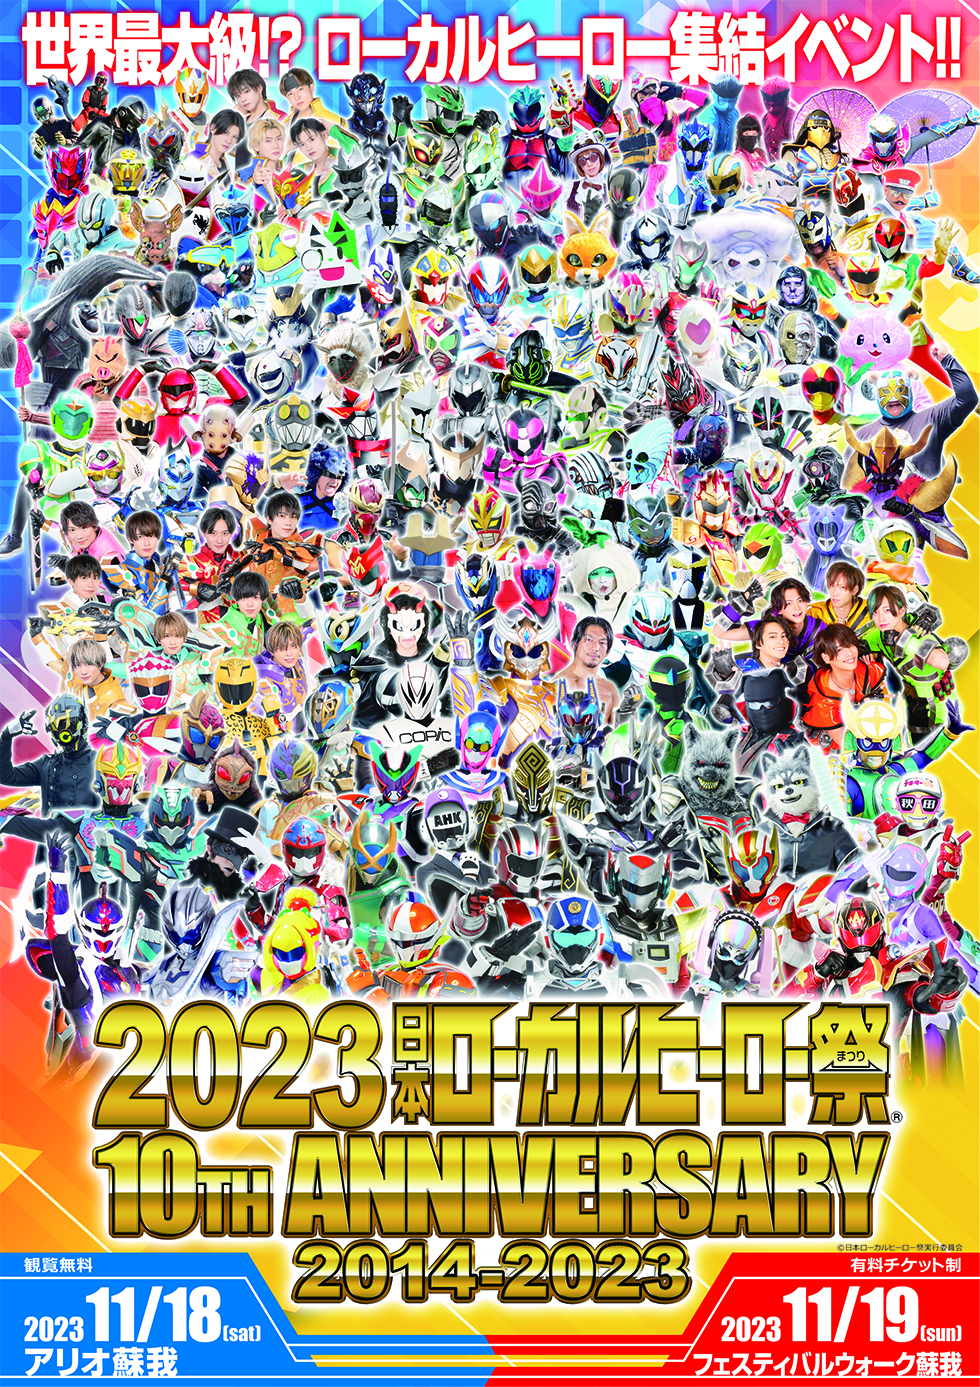 2023日本ローカルヒーロー祭 10th ANNIVERSARY